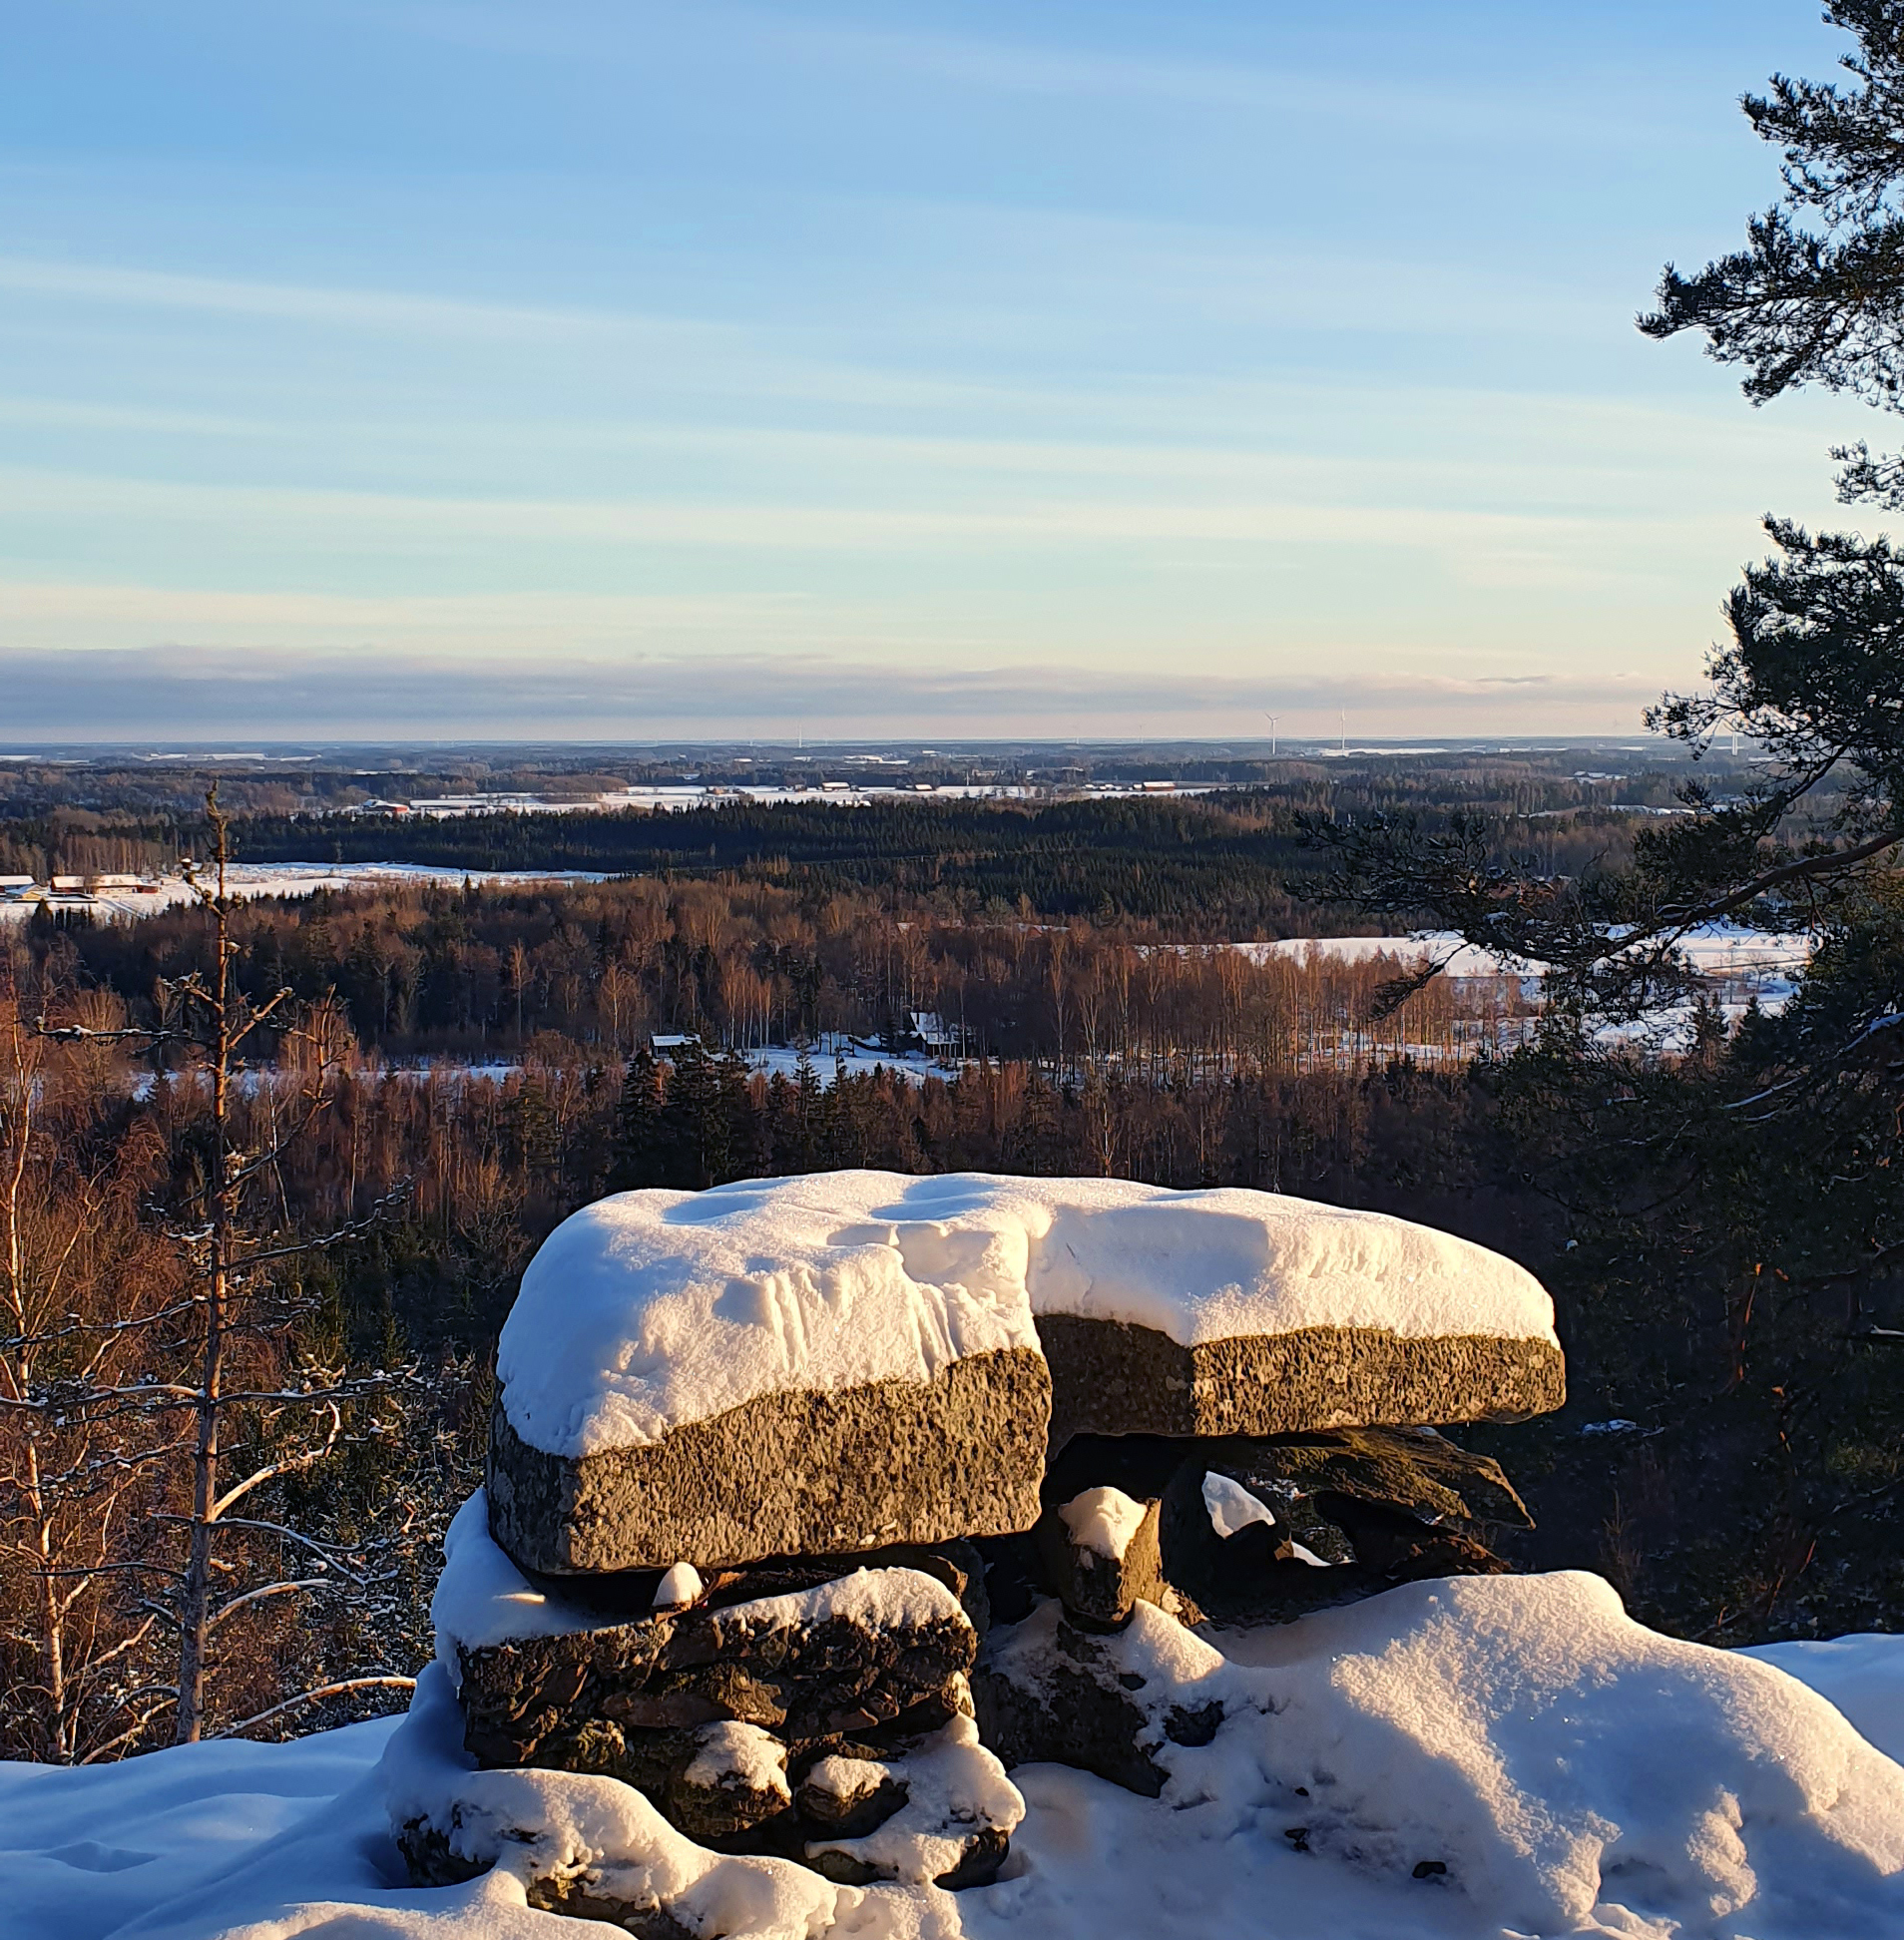 Ett stentorn på en utsiktplats där man ser ut över vidsträckt skog i snö.